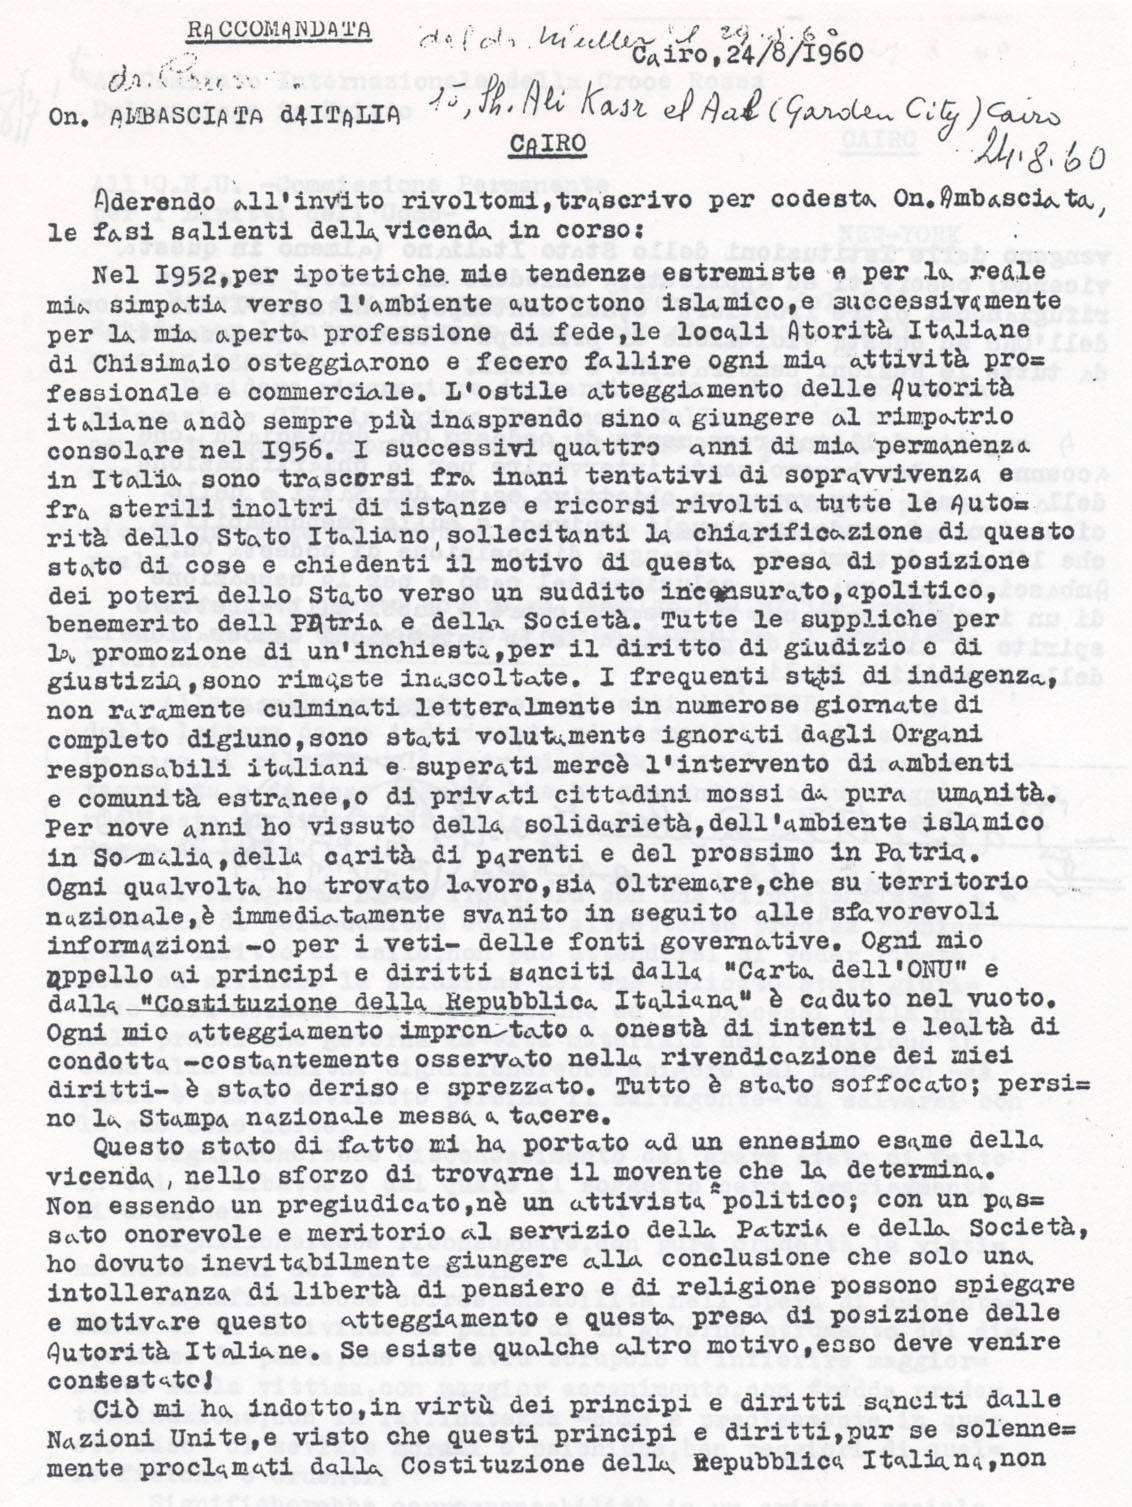 Lettera descrittiva dei fatti all'Ambasciata italiana pg. 1 (8° Asilo Politico)